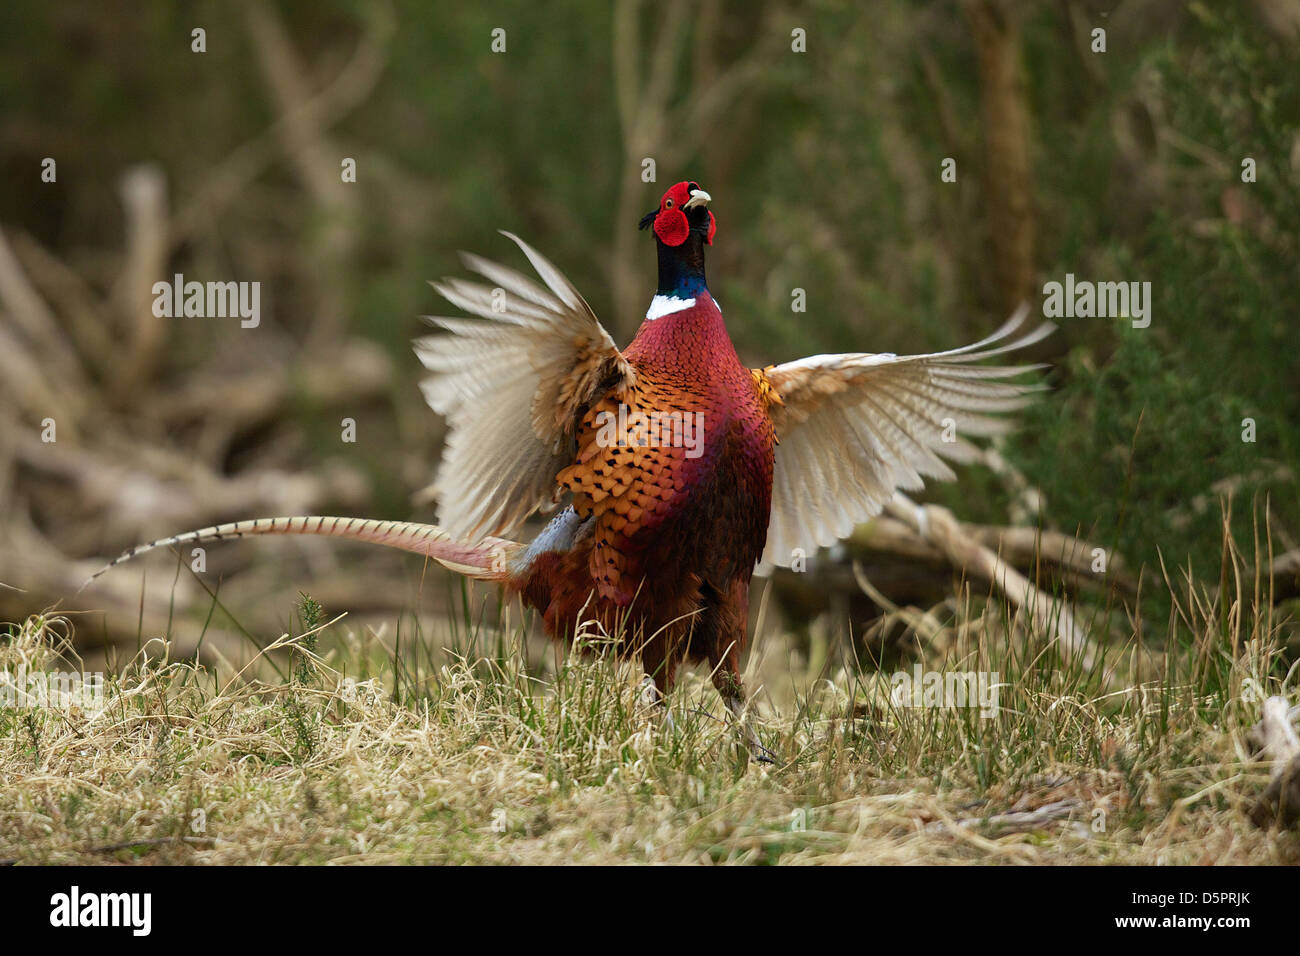 Male pheasant displaying during spring mating ritual Stock Photo